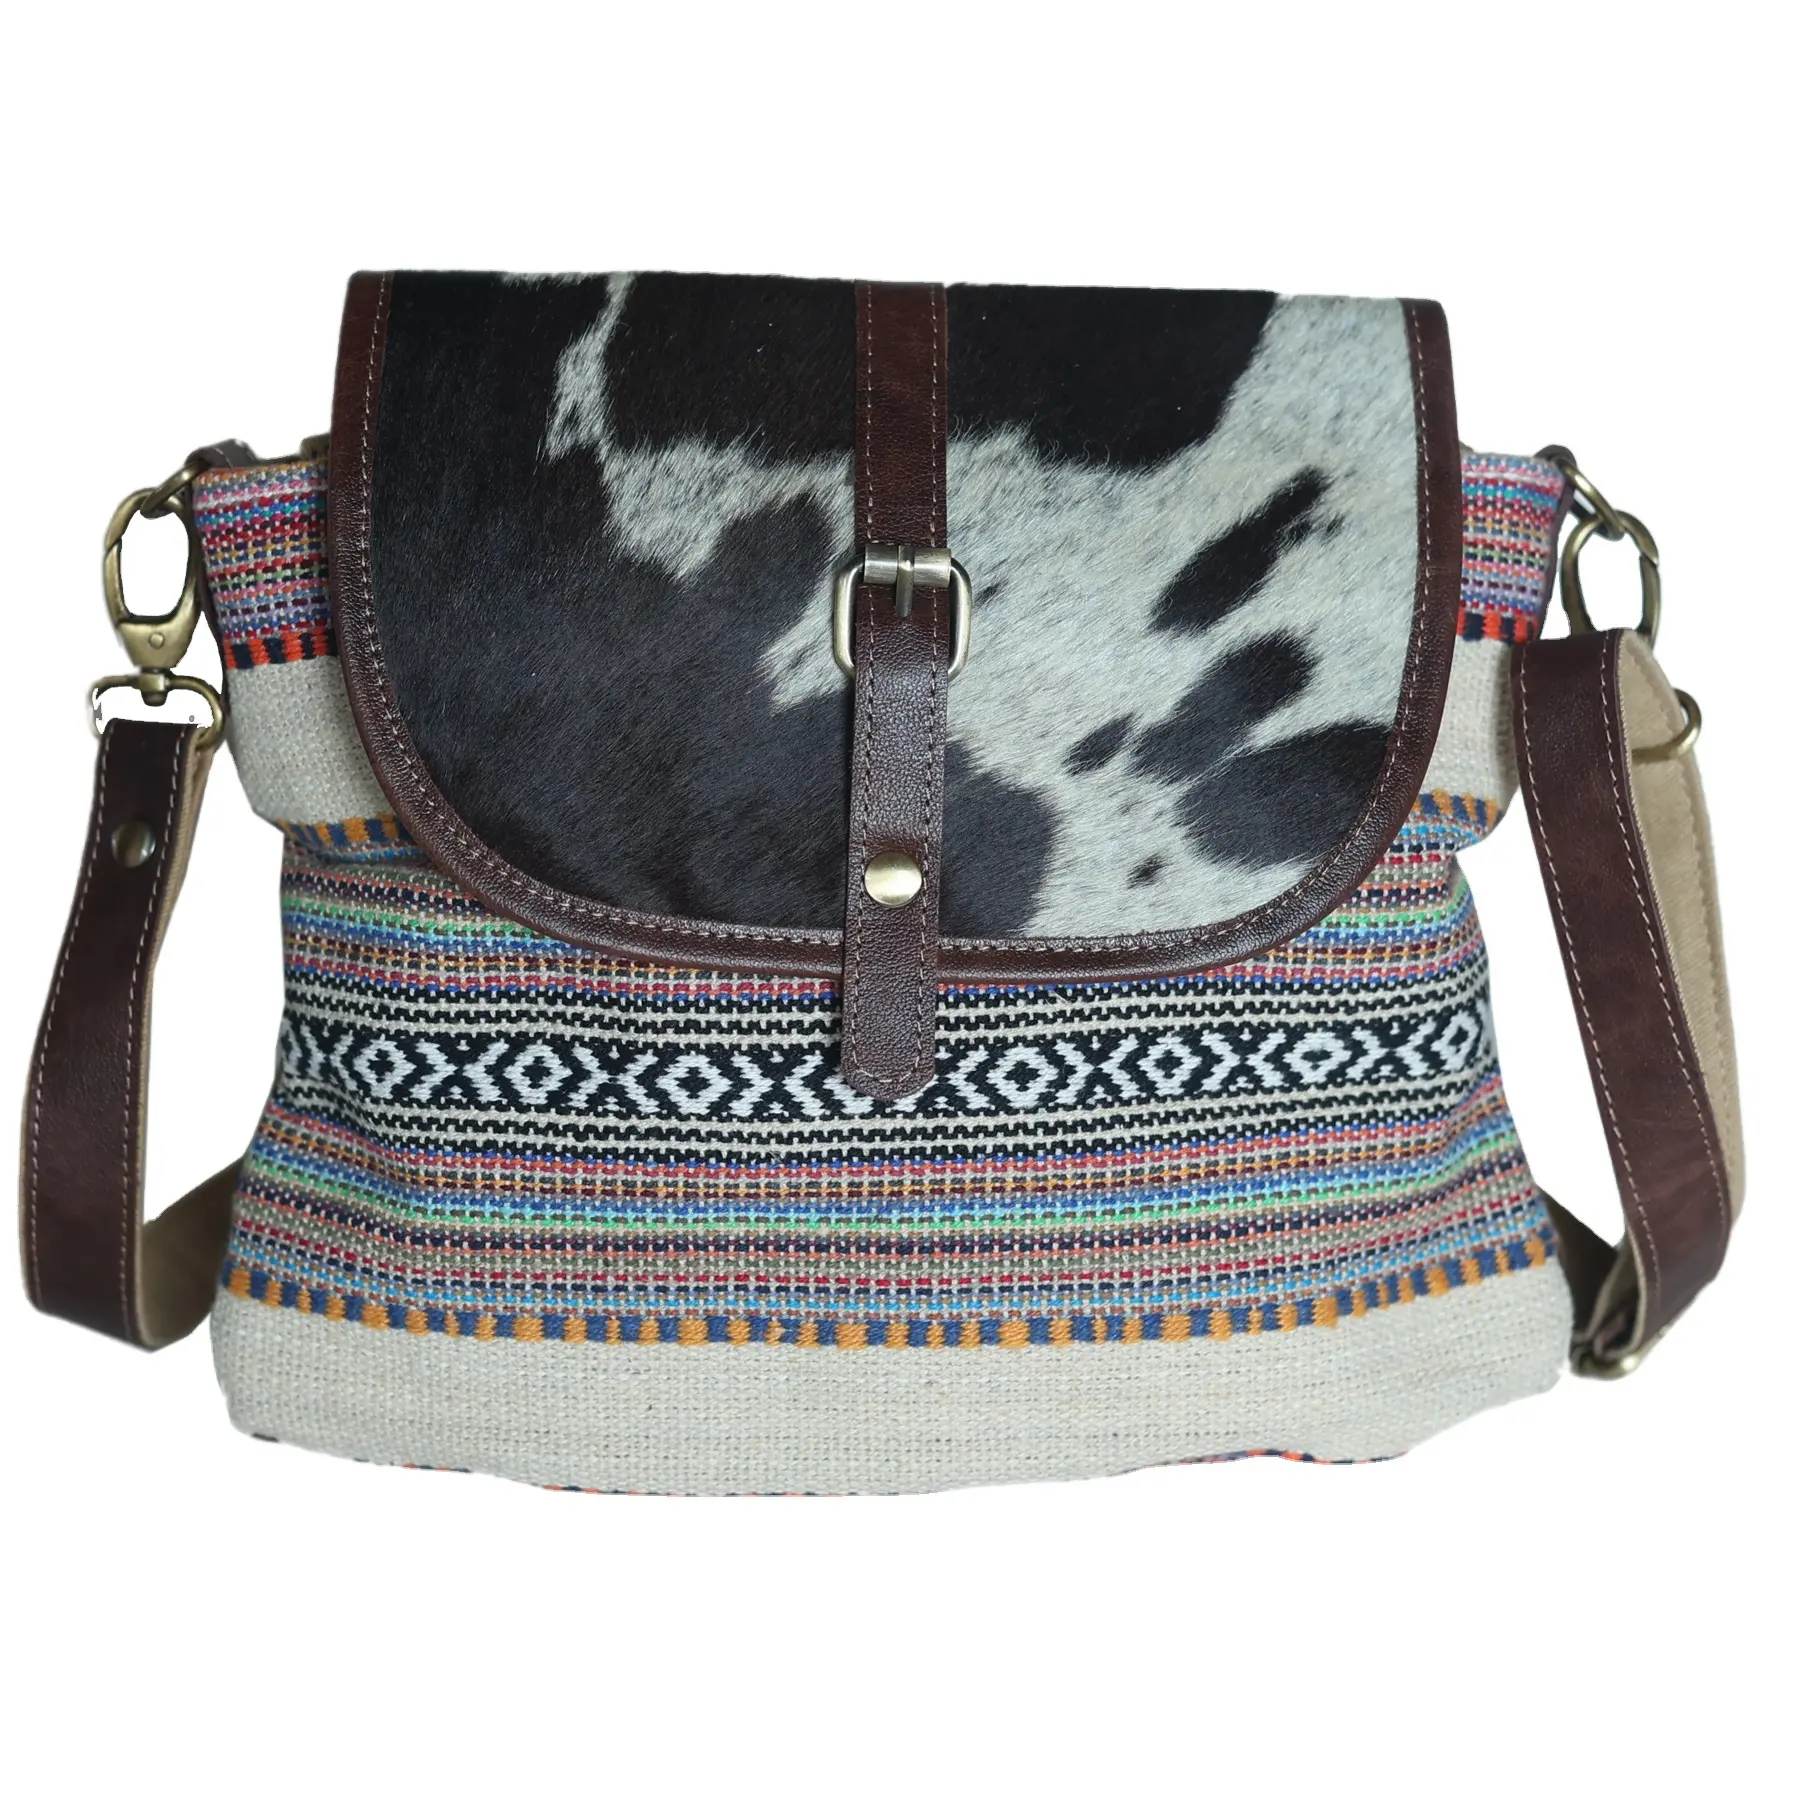 ट्रेंडिंग मायरा बैग, कस्टम आकार और रंगों पर चमड़े के बैग पर असली बालों के साथ सर्वोत्तम गुणवत्ता वाले गाय के चमड़े के हाथ से बुने हुए सूती कपड़े